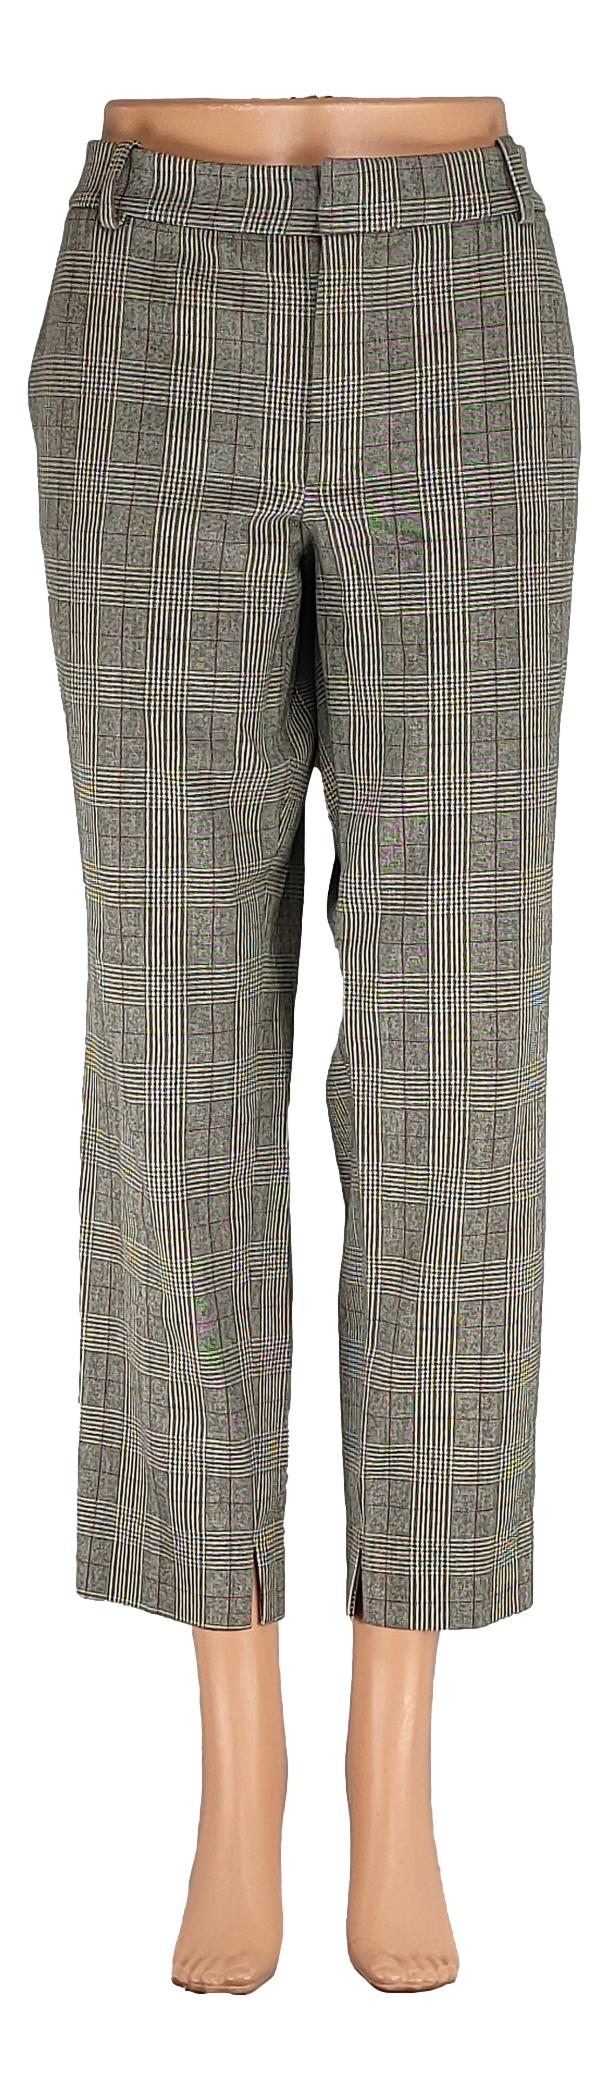 Pantalon Zara - Taille 44